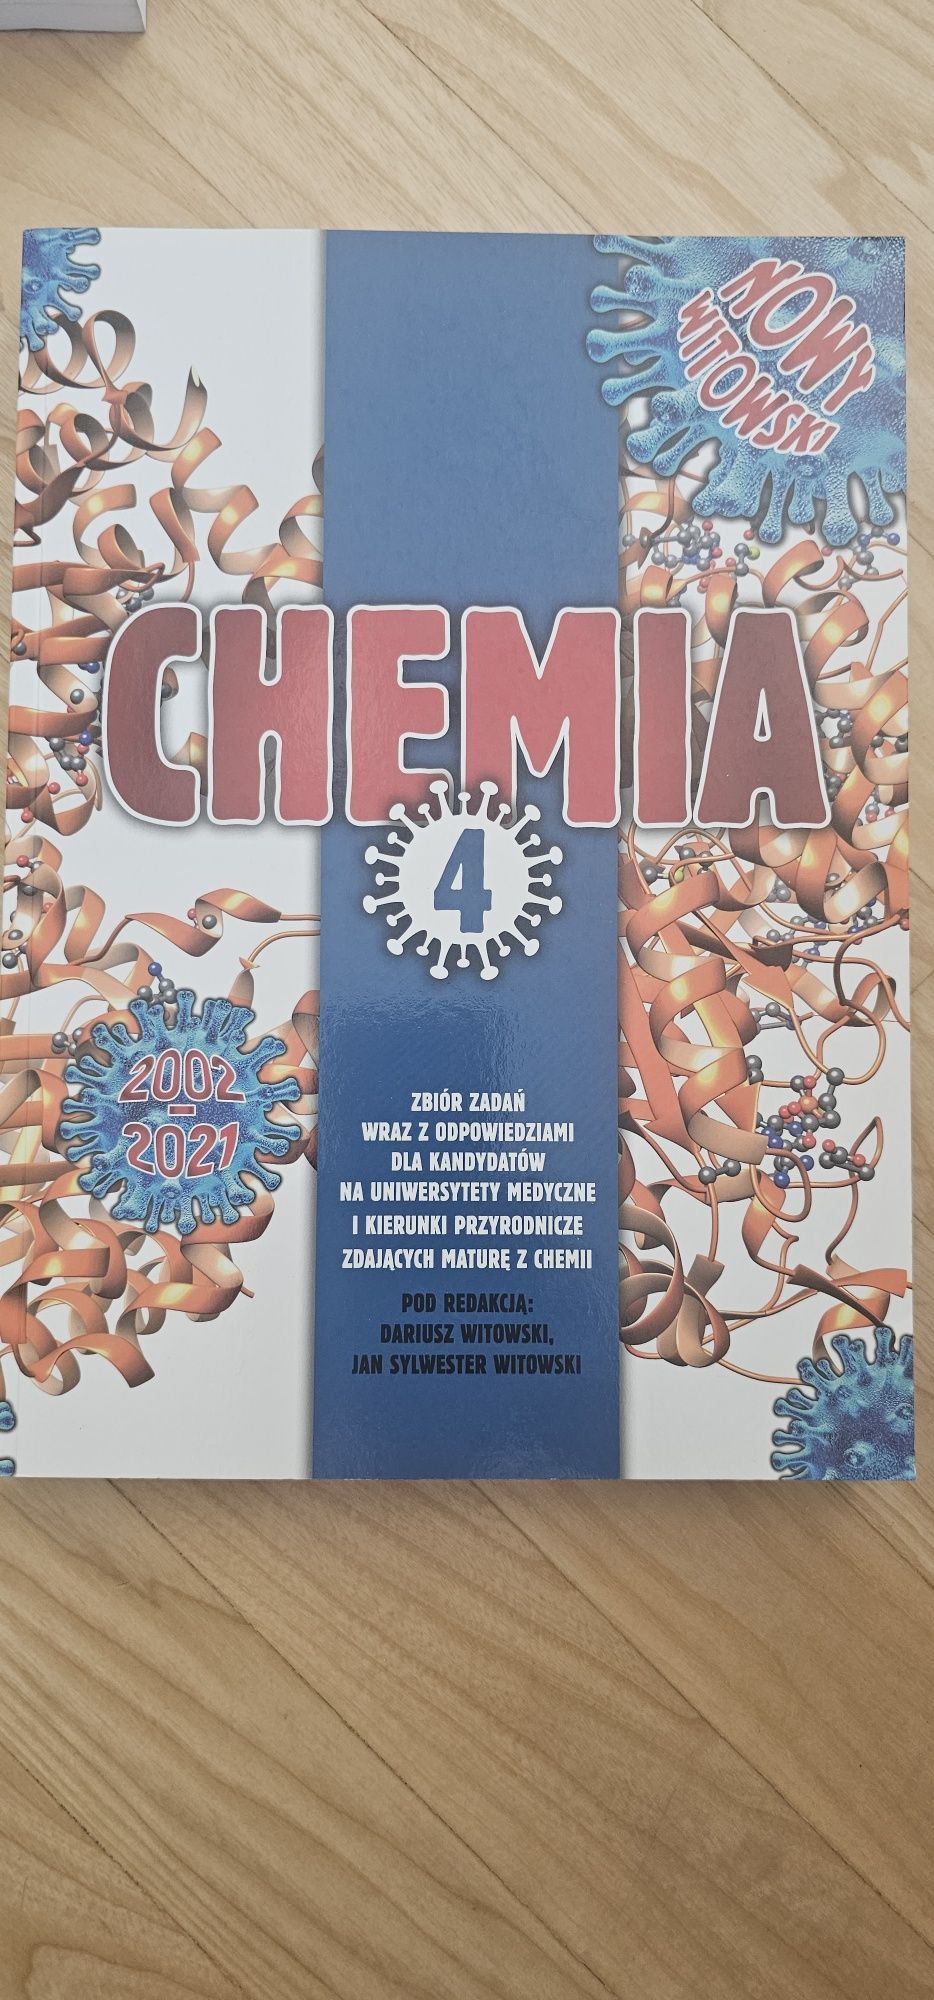 Chemia 4 Witowski 2002-21 no